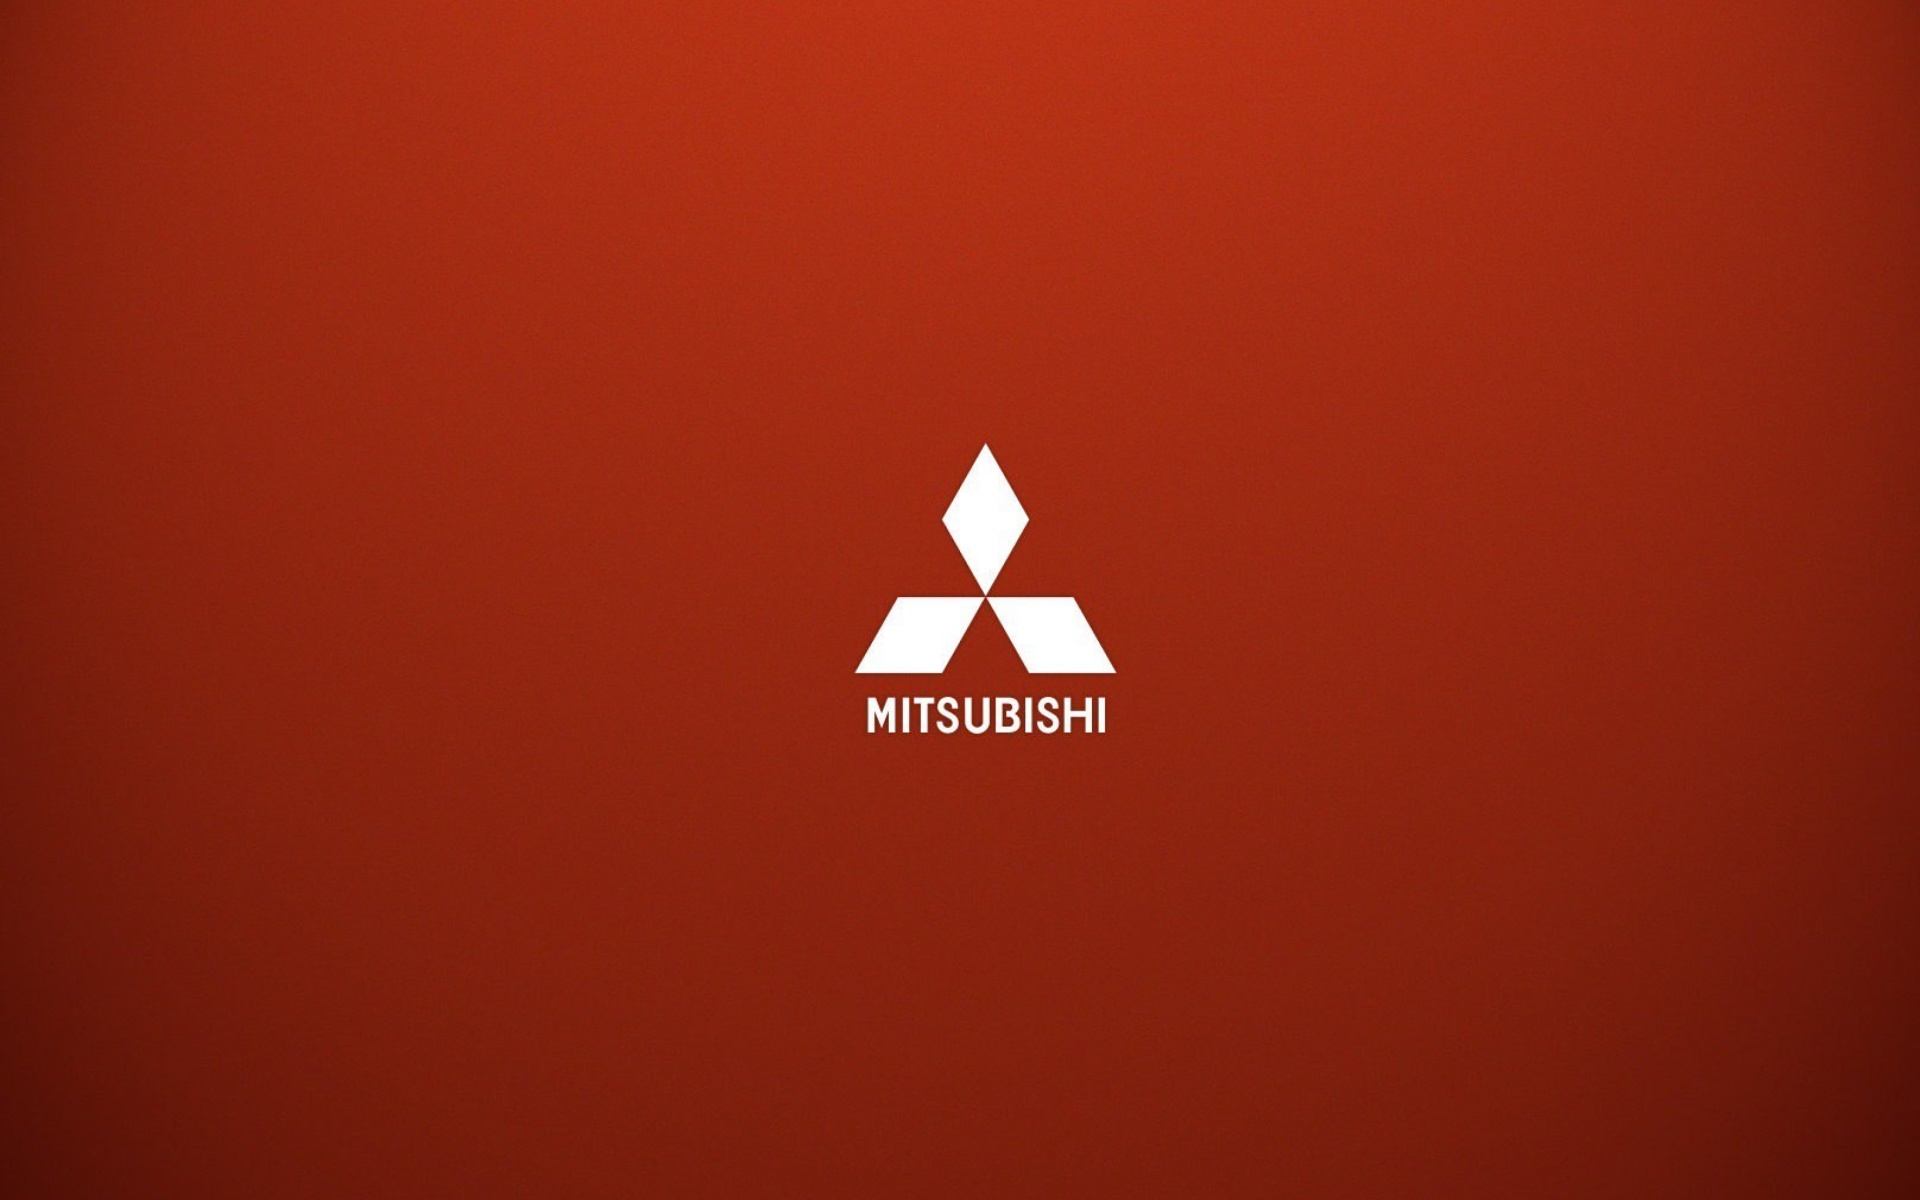 Mitsubishi logo wallpaper 1920x1200